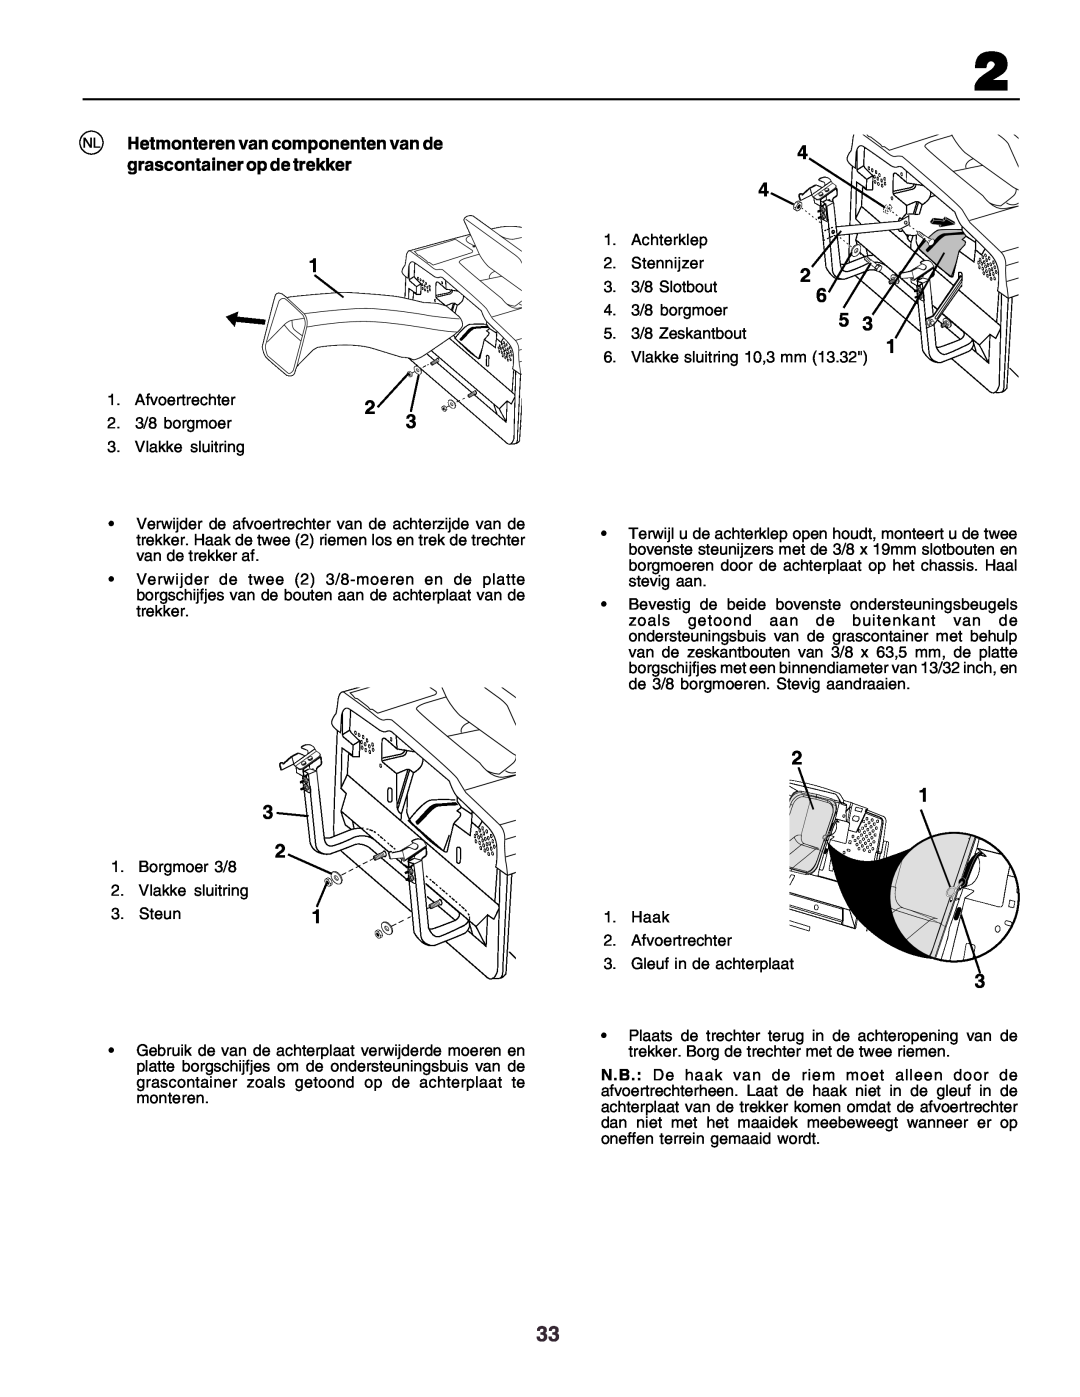 Husqvarna CT130 instruction manual NL Hetmonteren van componenten van de grascontainer op de trekker, sluitring 